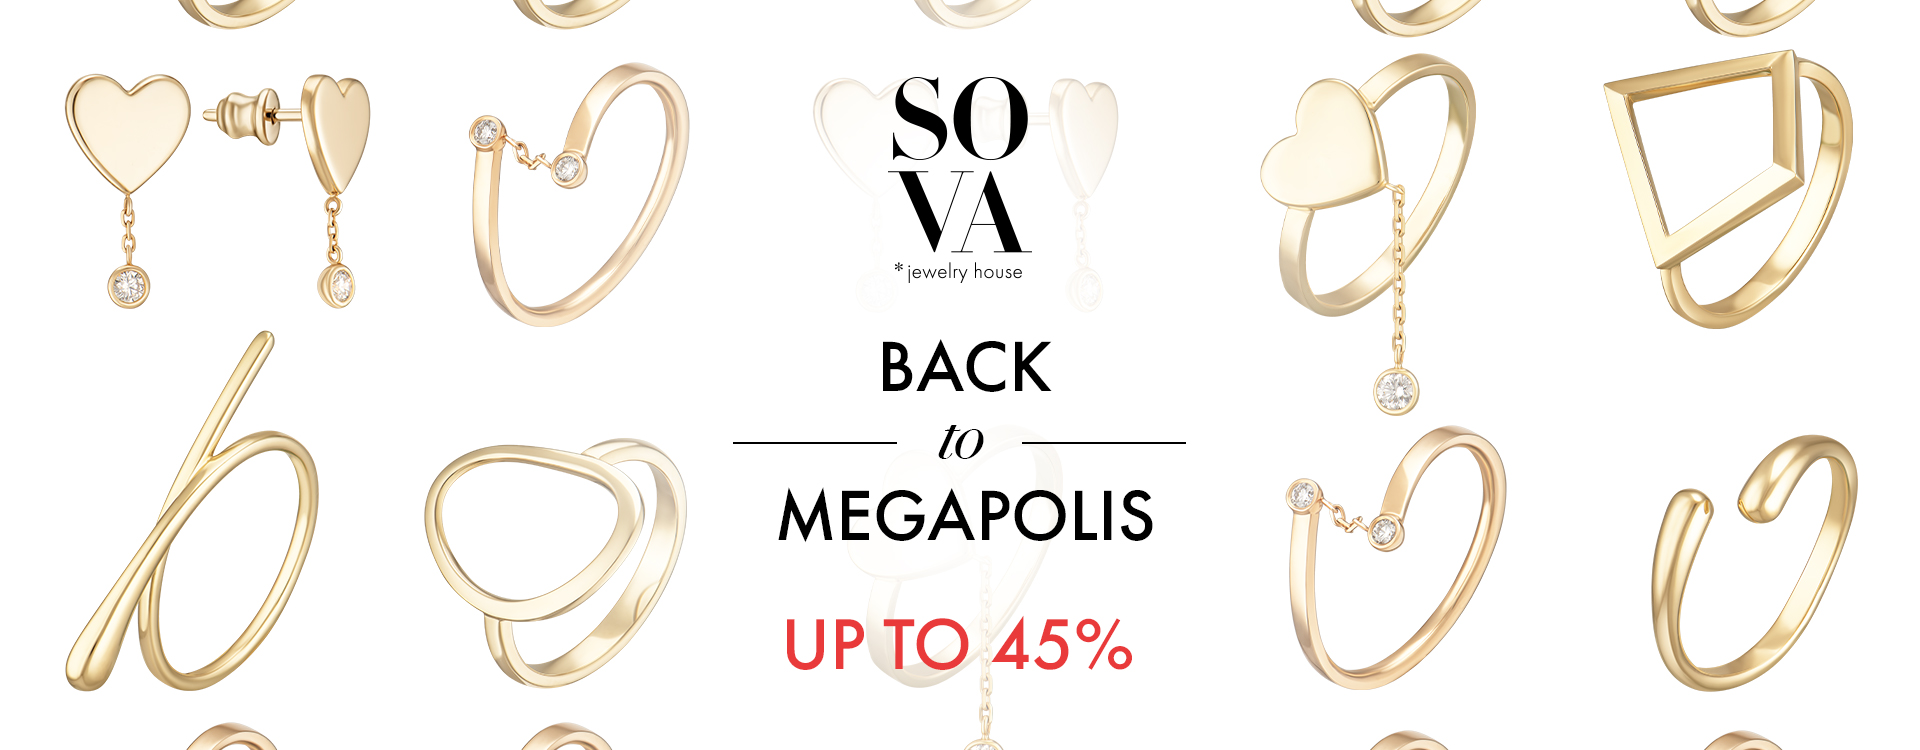 SALE Back to Megapolis -45% in SOVA